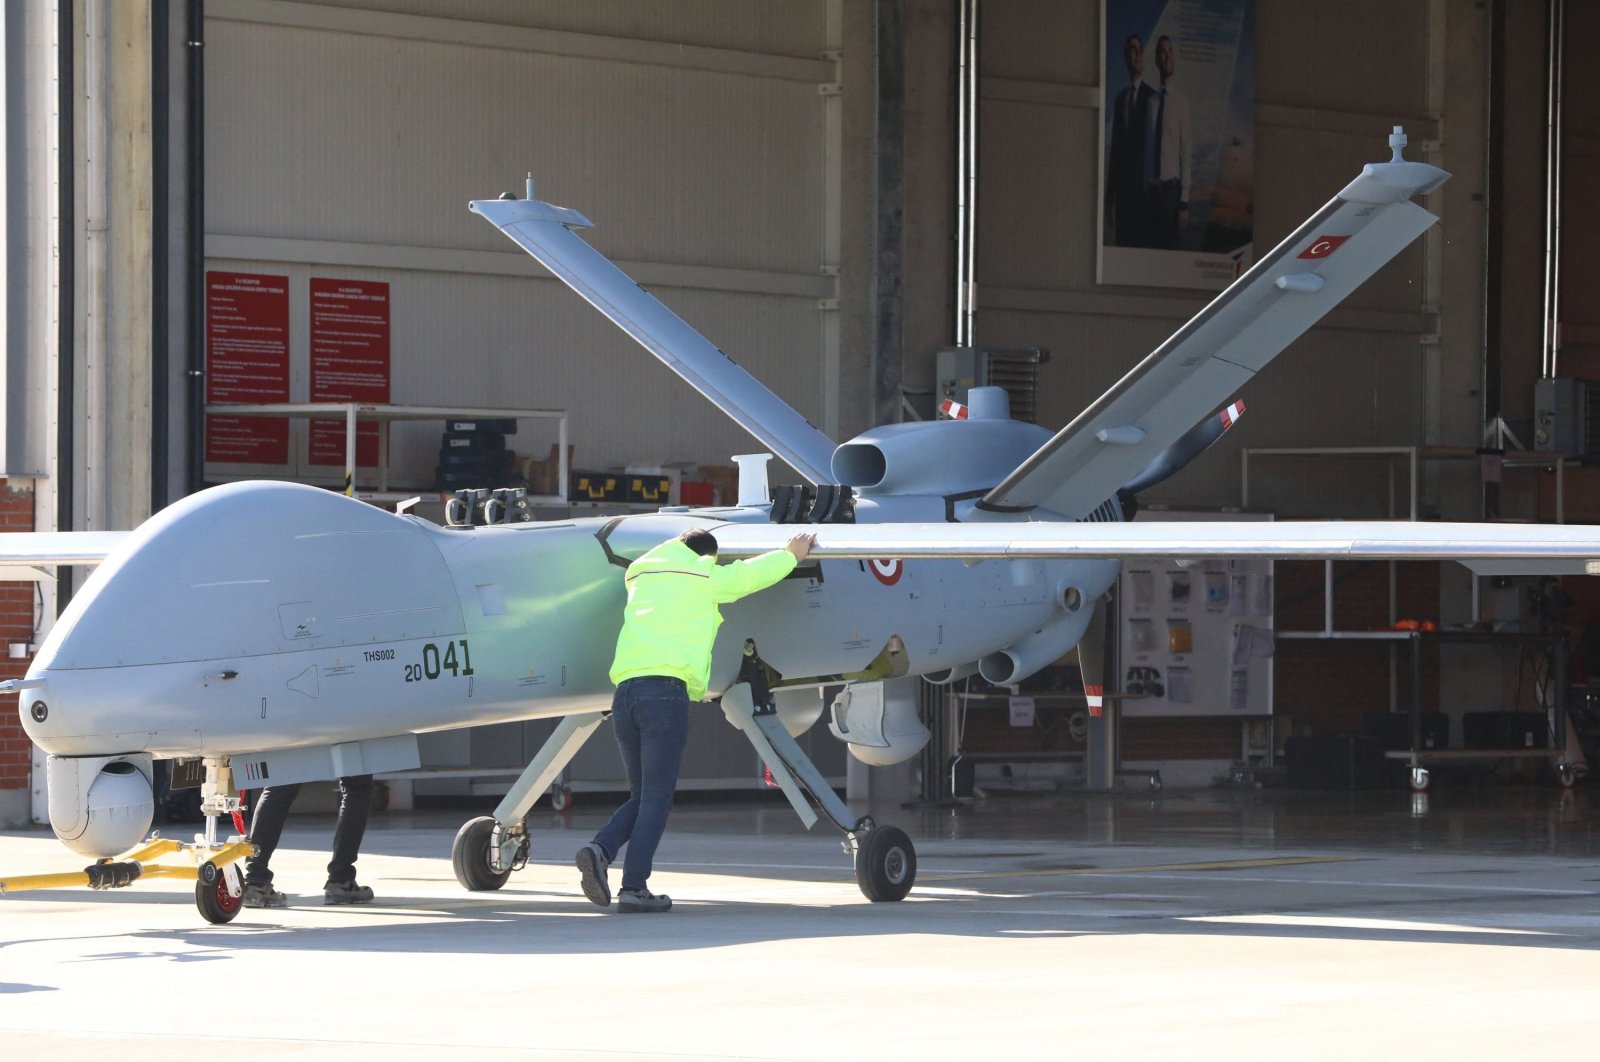 Kyrgyzstan mengatakan telah membeli 4 drone tempur berbeda dari Türkiye